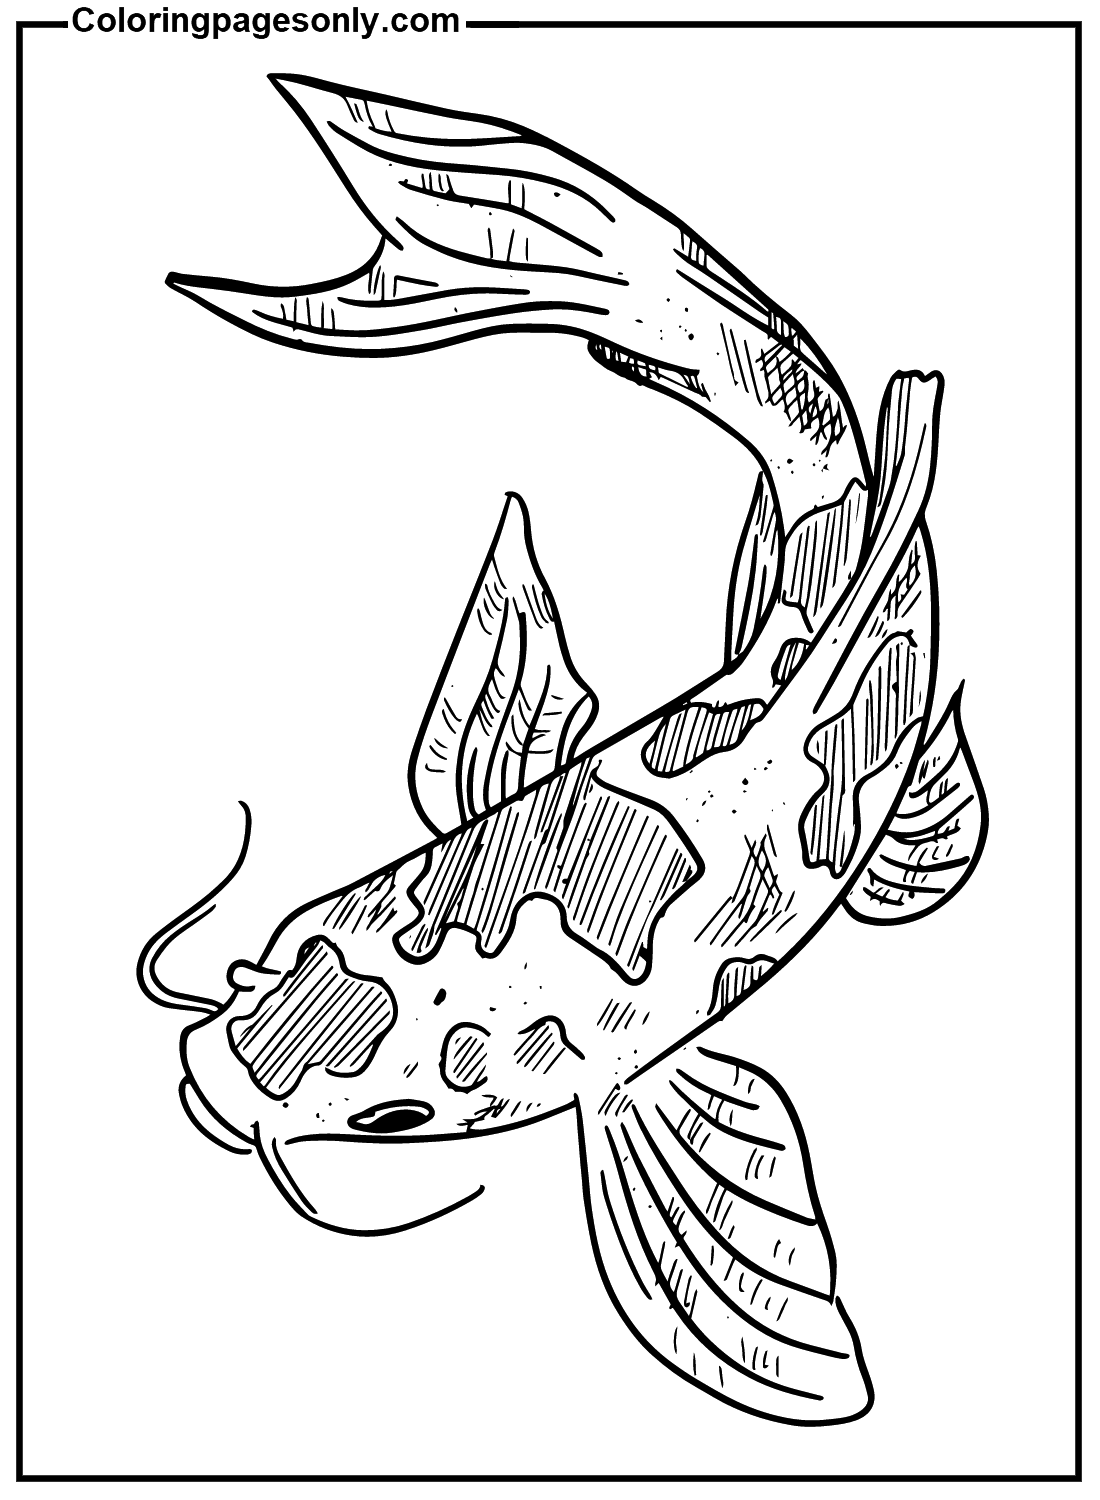 Arte de peixes Koi de Koi Fish